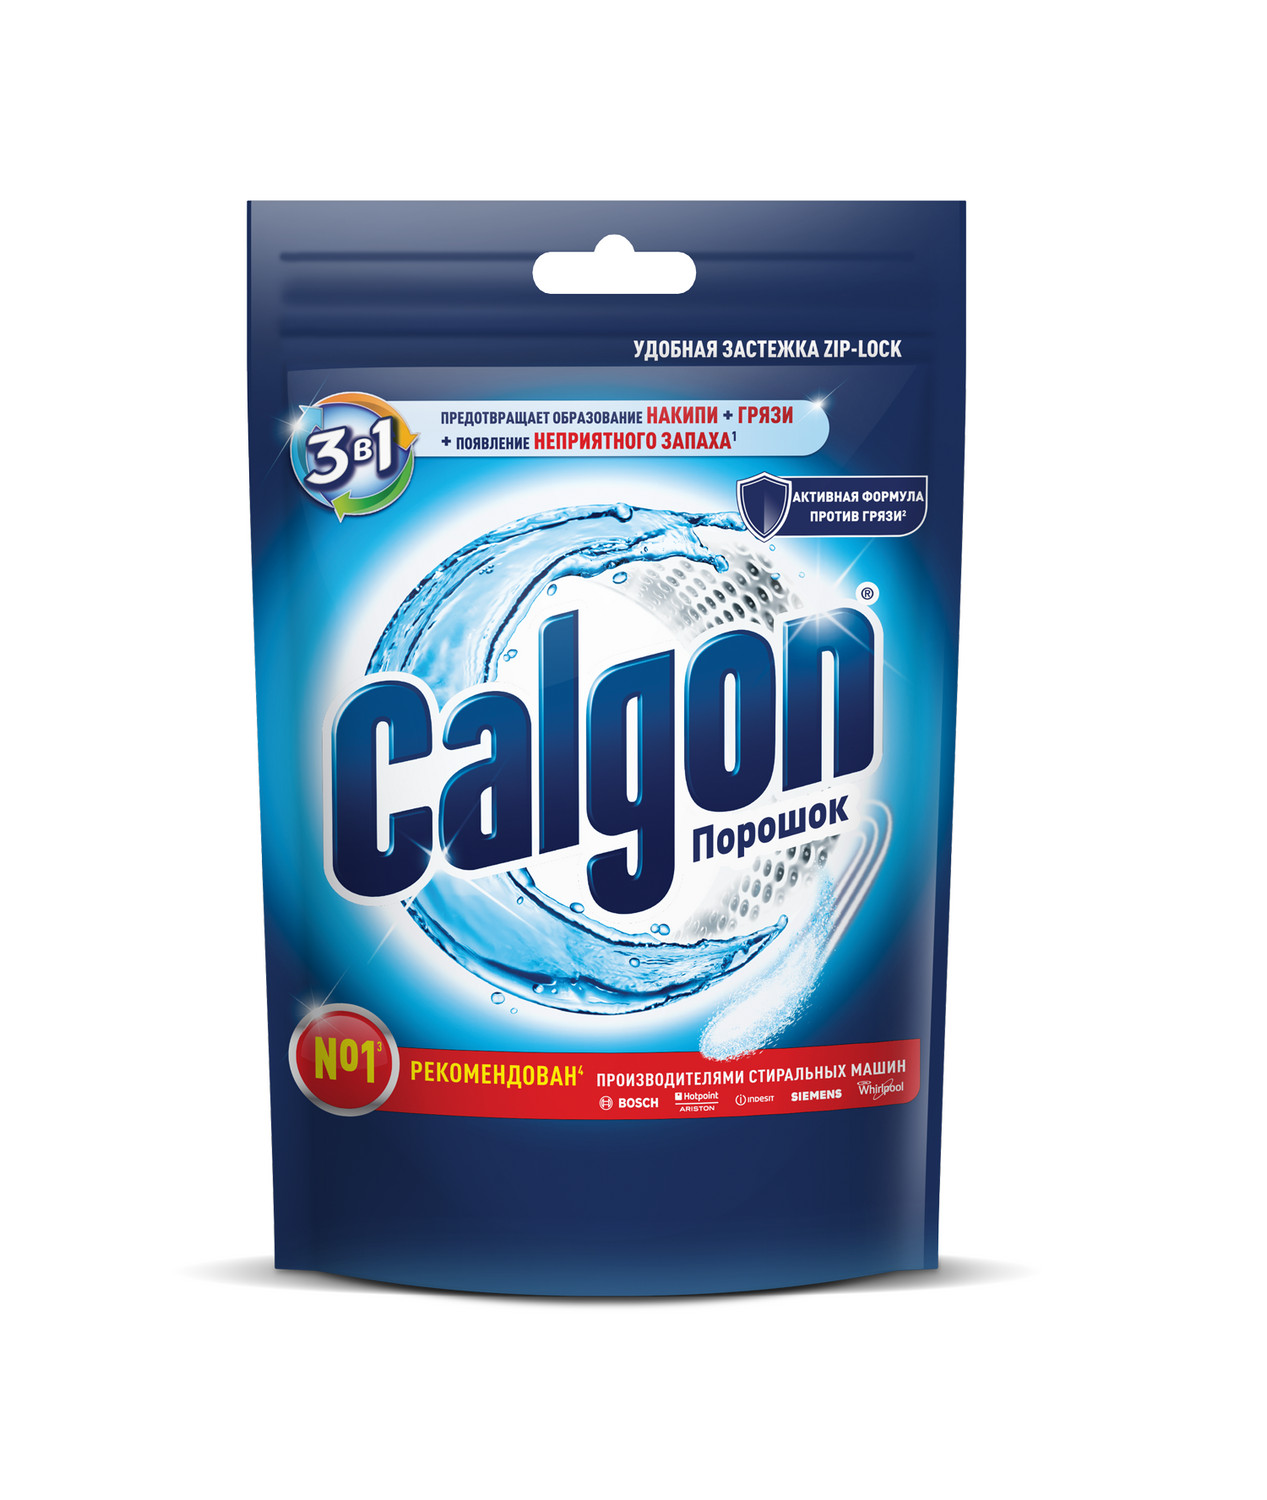 Средство для стиральной машины Calgon порошок 3в1 200г средство для стиральной машины calgon порошок 3в1 200г